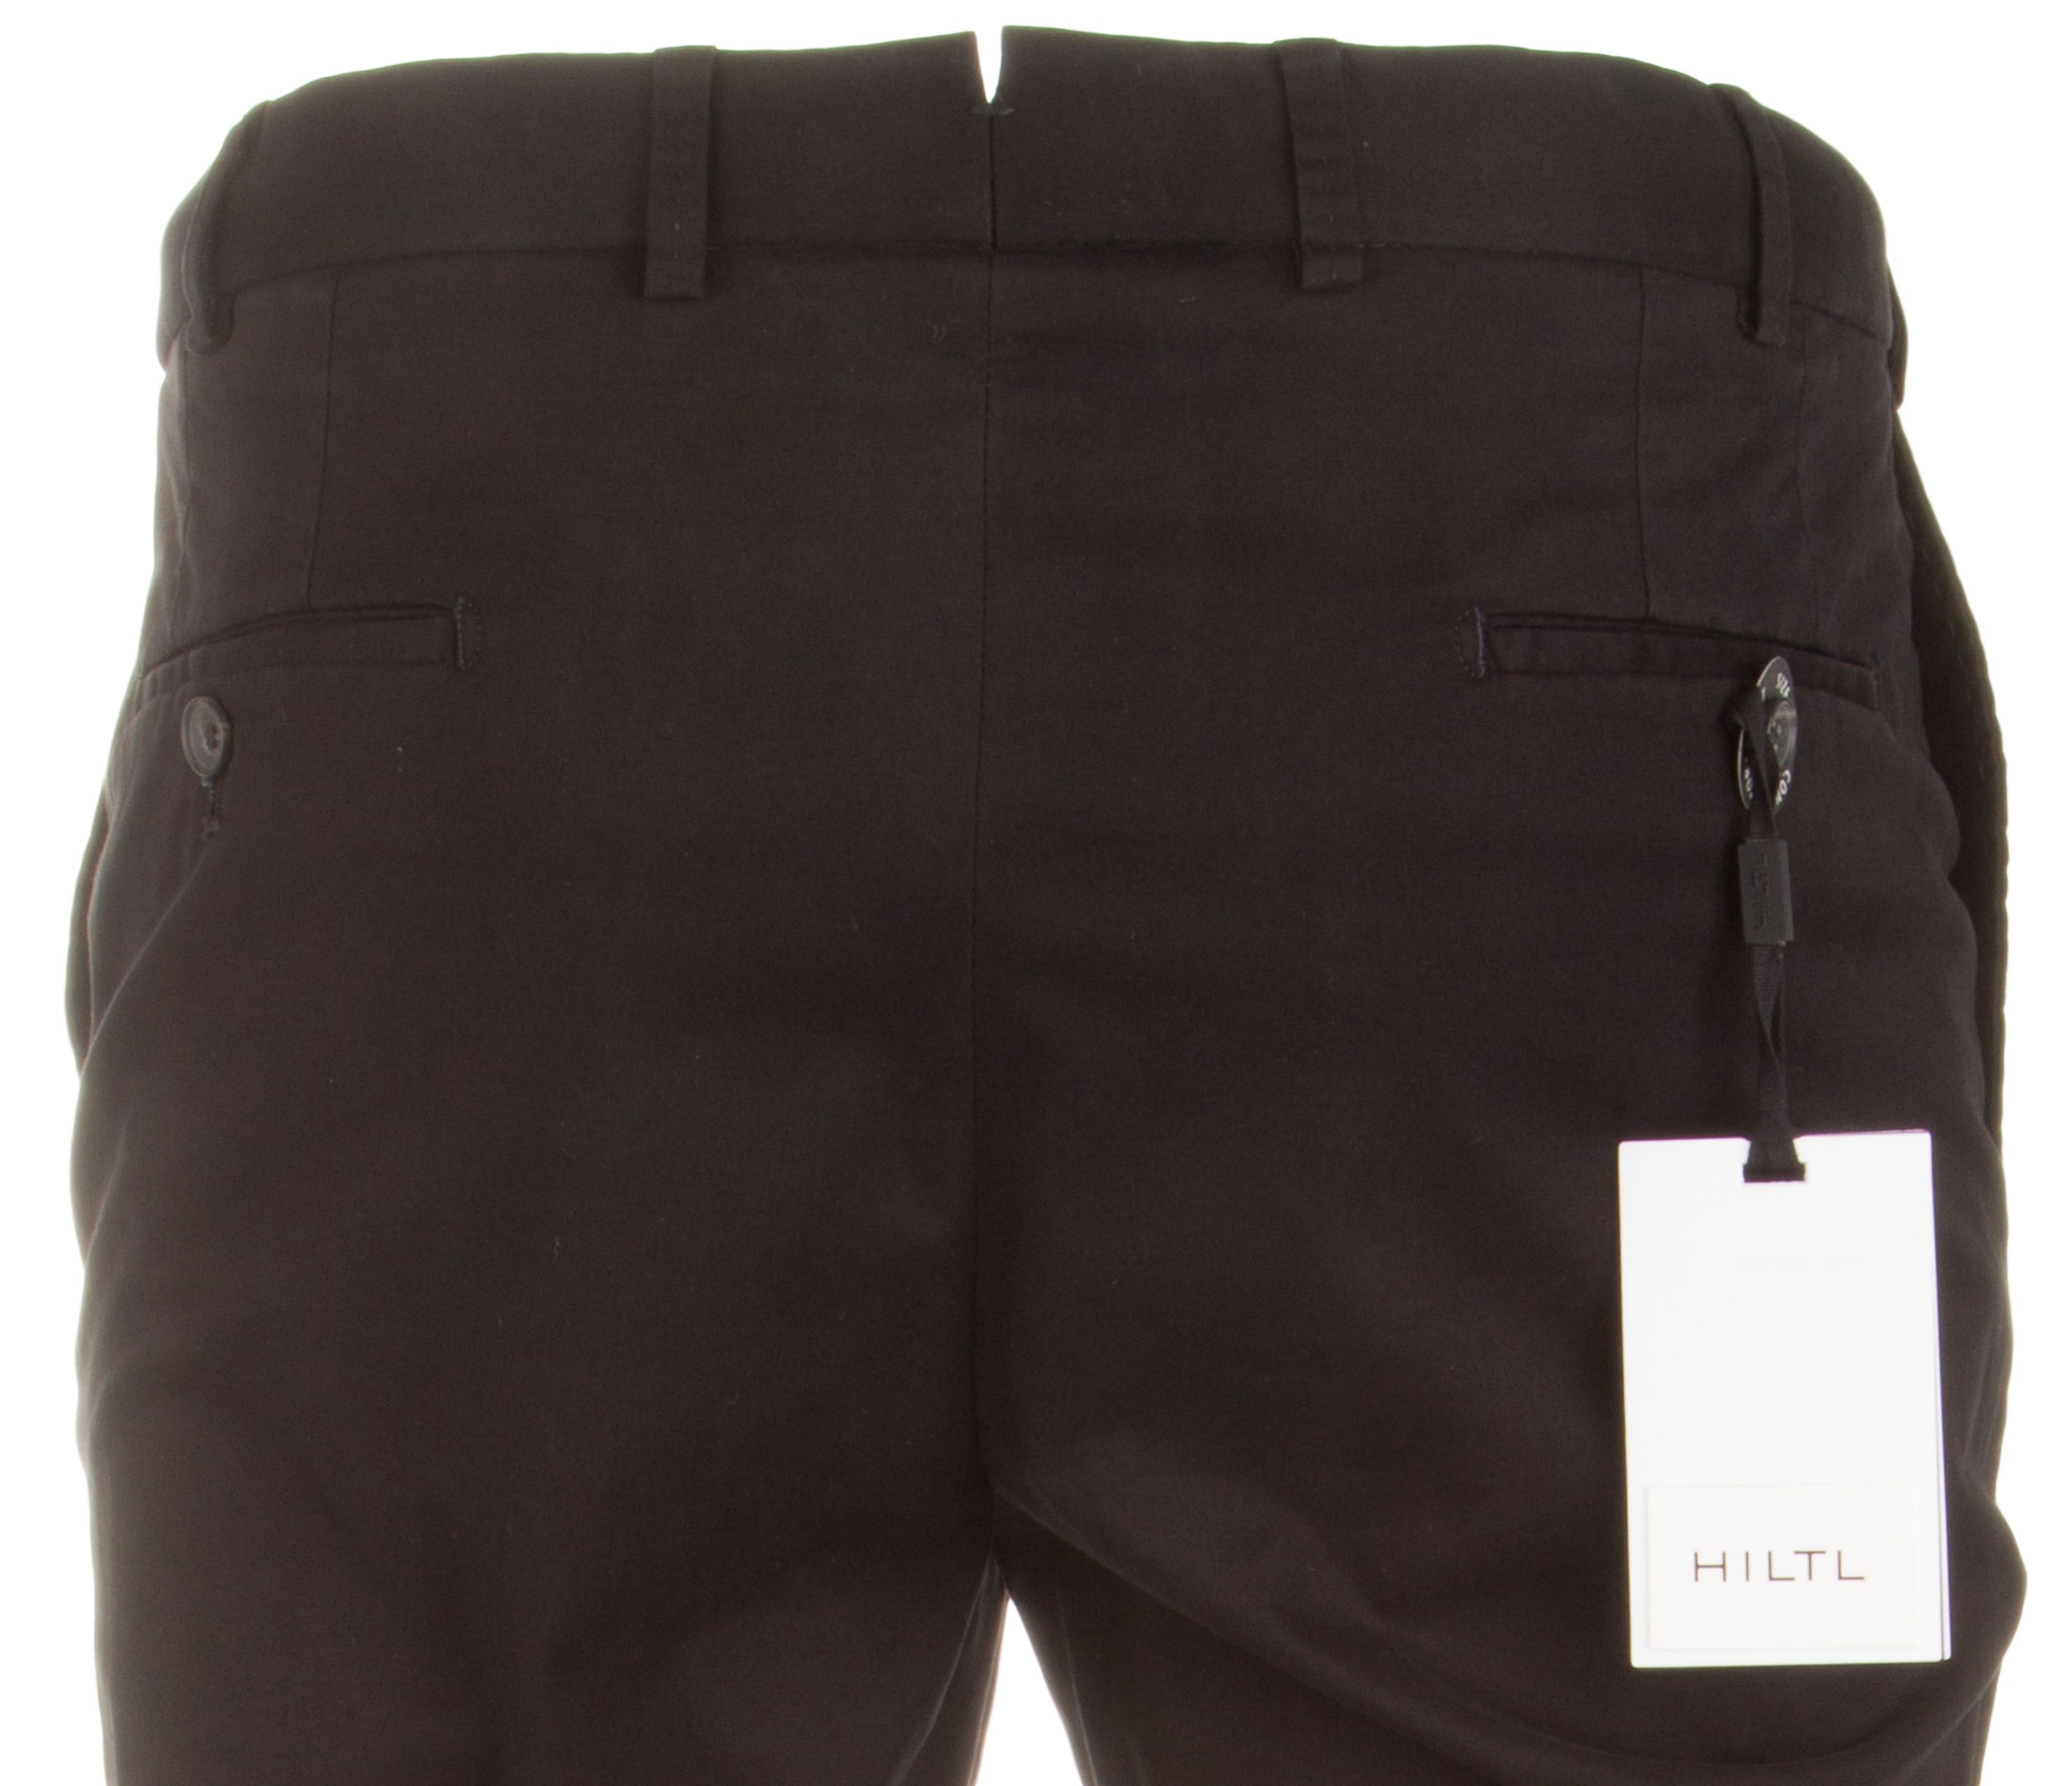 Hiltl Parma Signature Essential Cotton Pants Black | Jan Rozing Men's ...